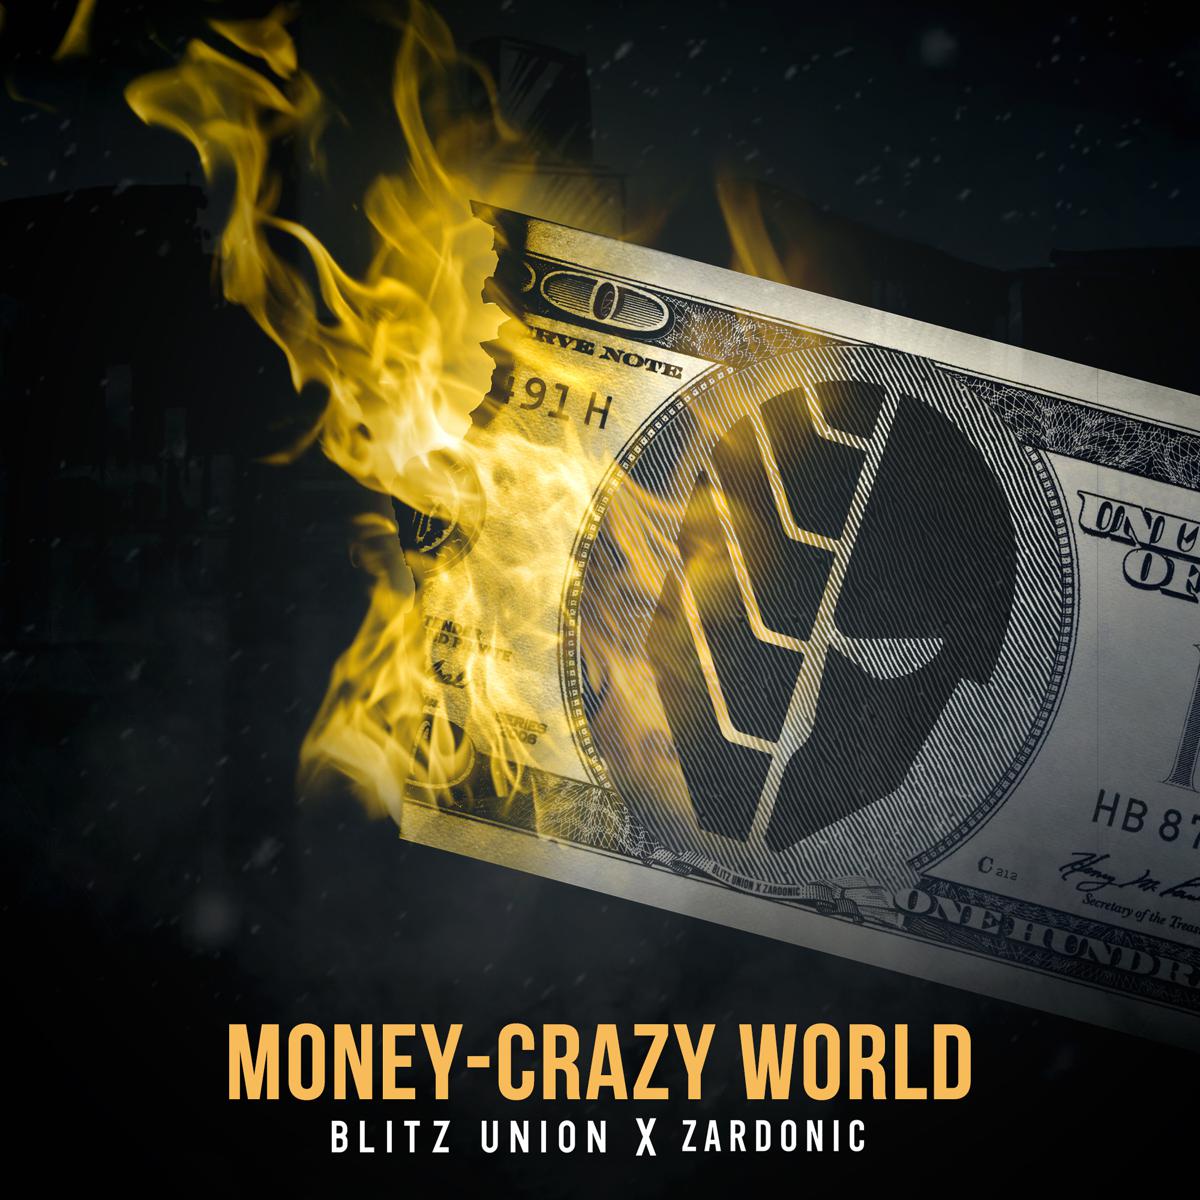 Крейзи мани. Blitz Union. Zardonic money- Crazy World. Blitz Union группа. Money money money Crazy World.